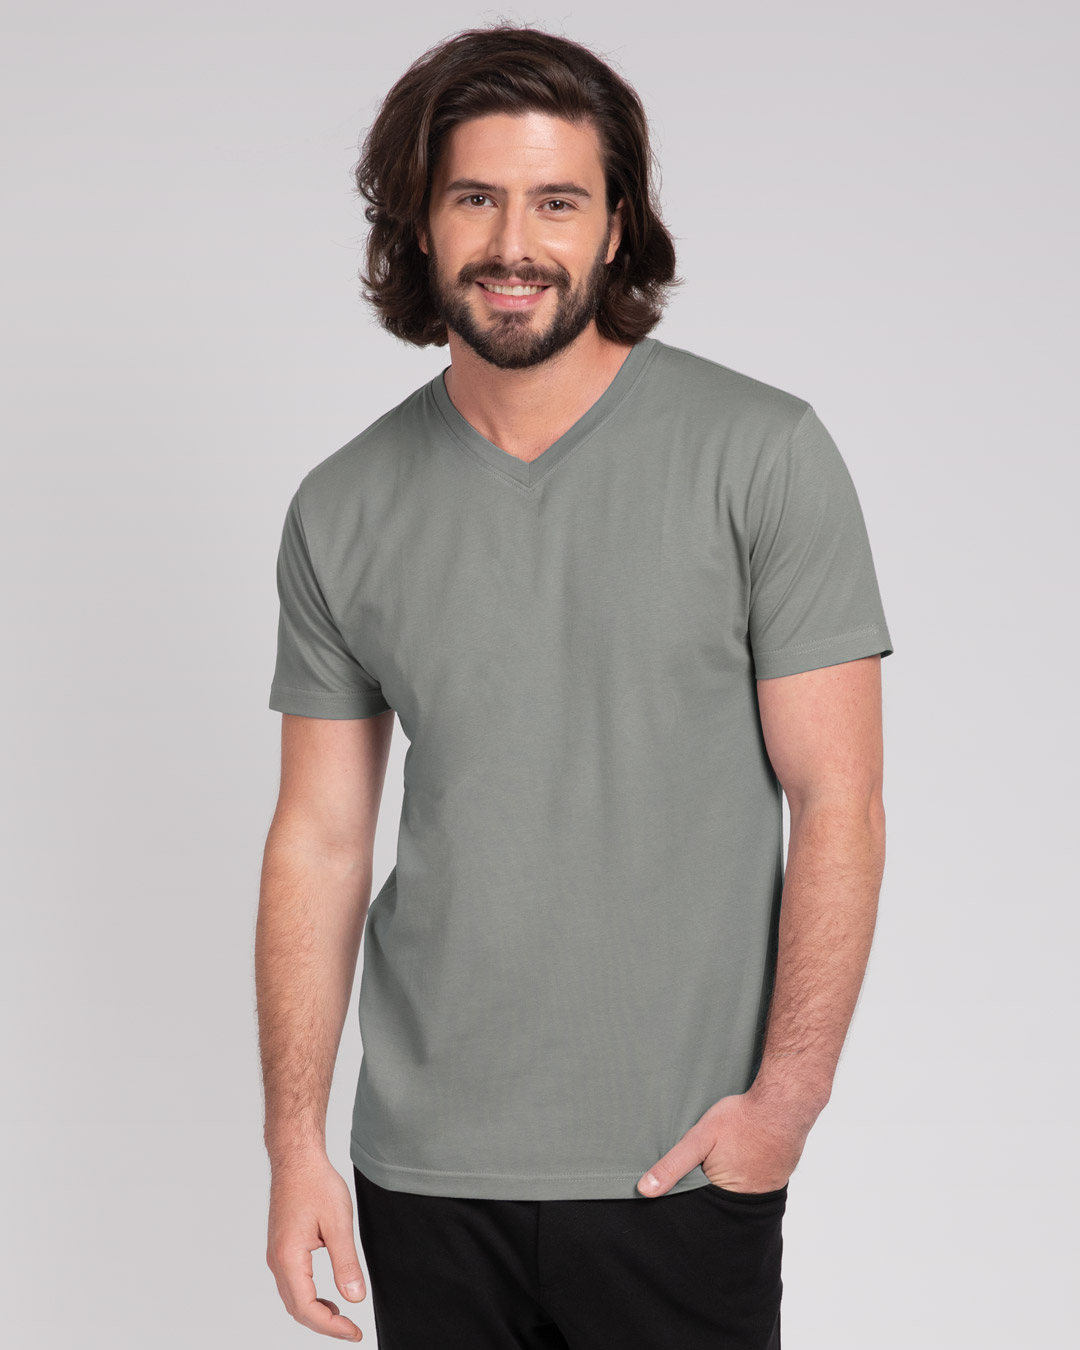 Buy Meteor Grey V-Neck T-Shirt Online at Bewakoof